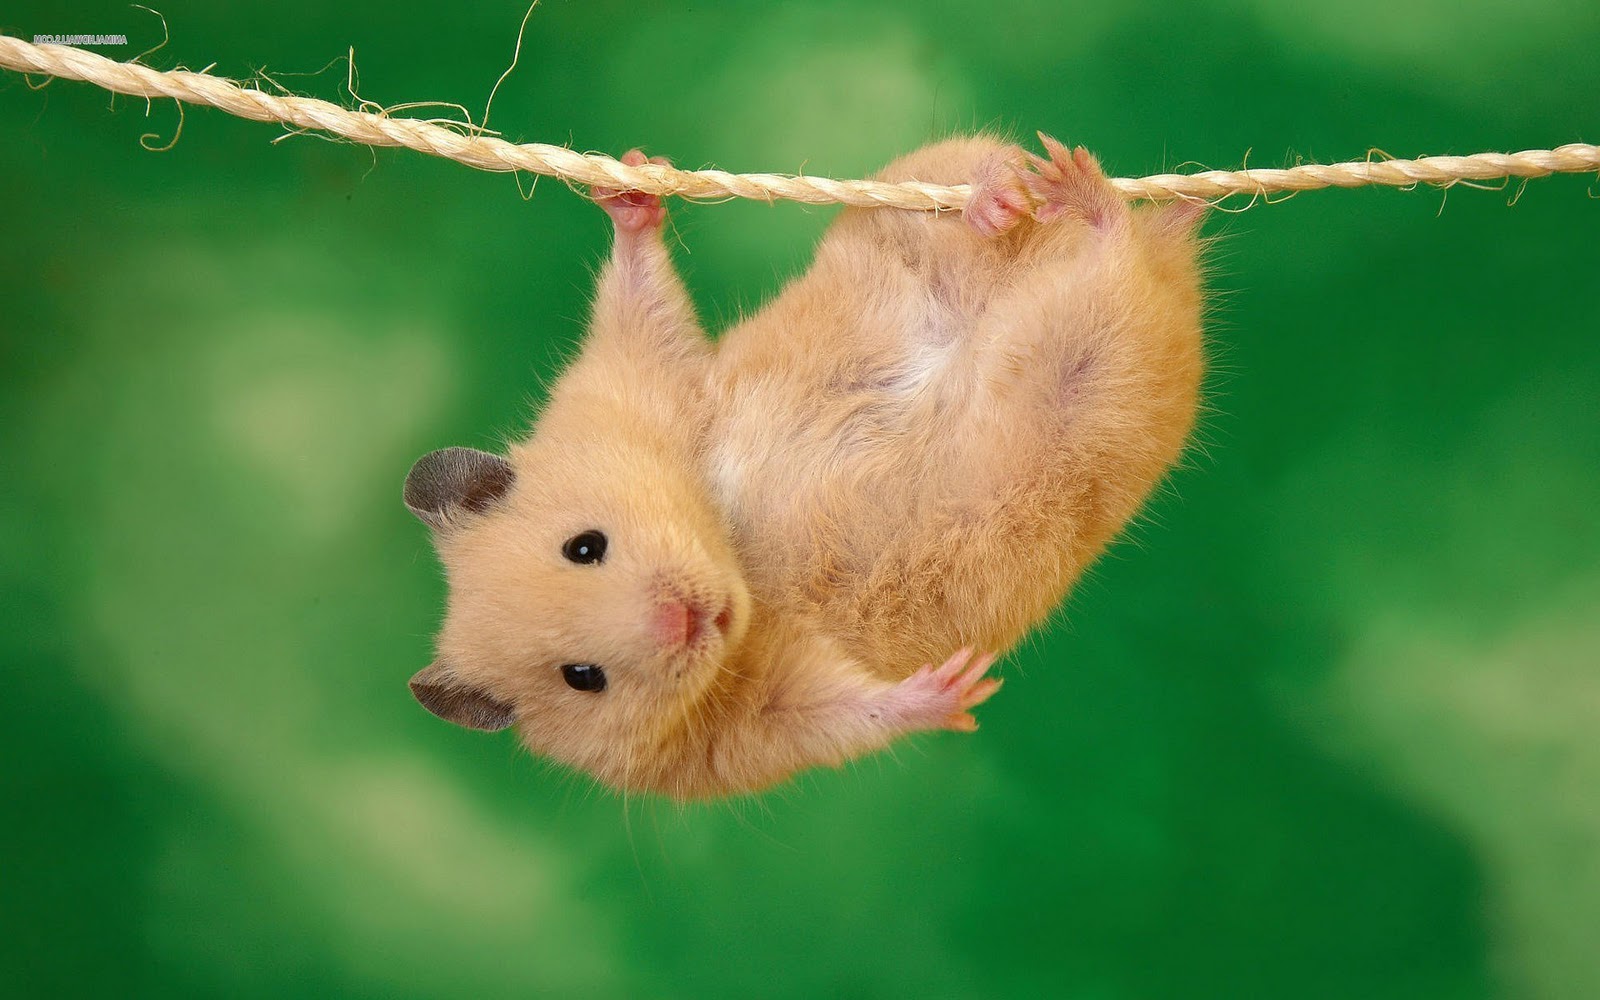 Hamsters achtergronden dieren hd hamster wallpapers foto 9jpg 1600x1000